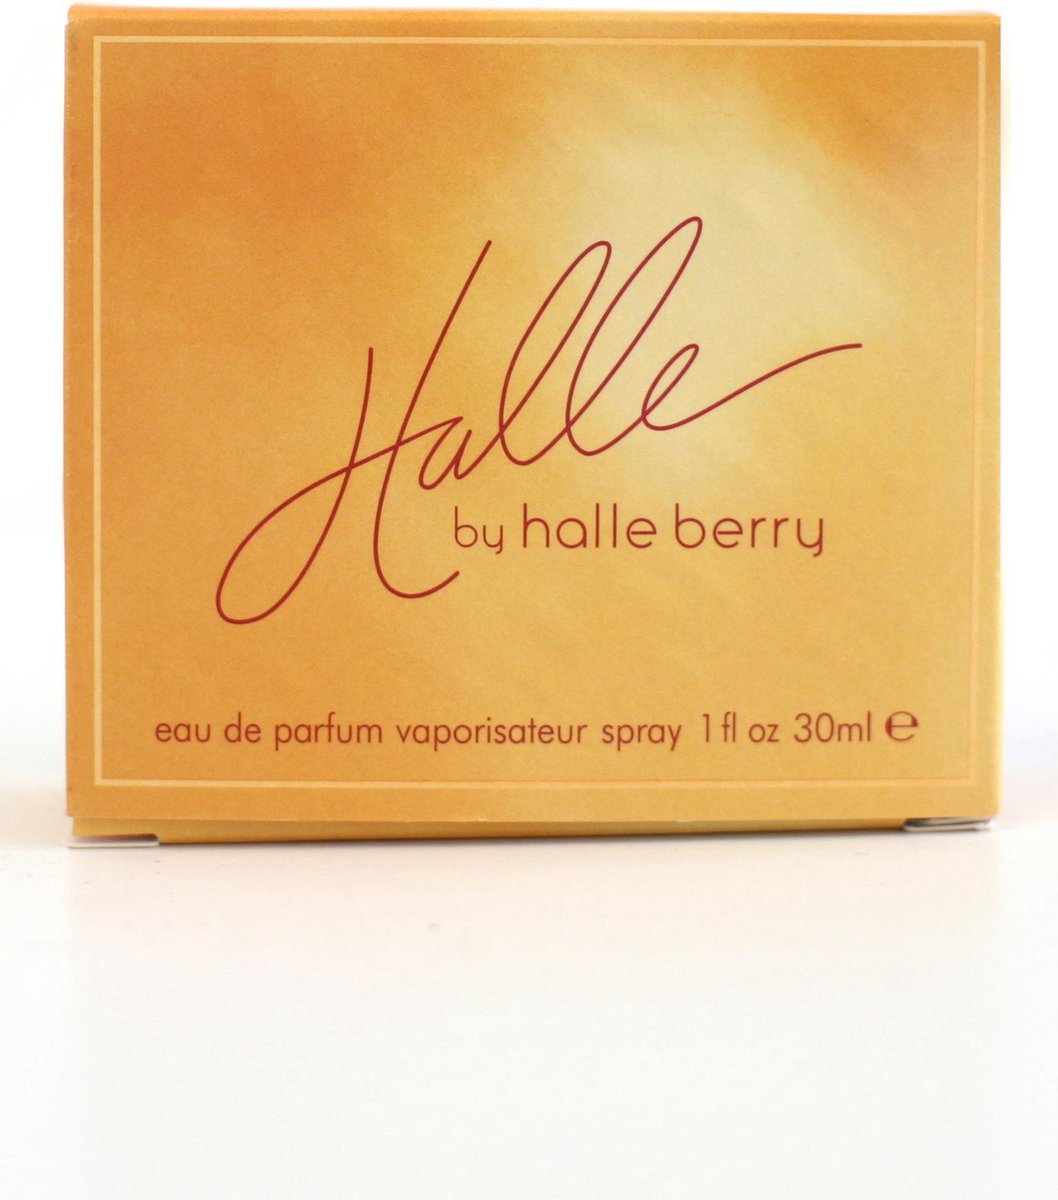 Halle Berry for Women - 30 ml - Eau de parfum